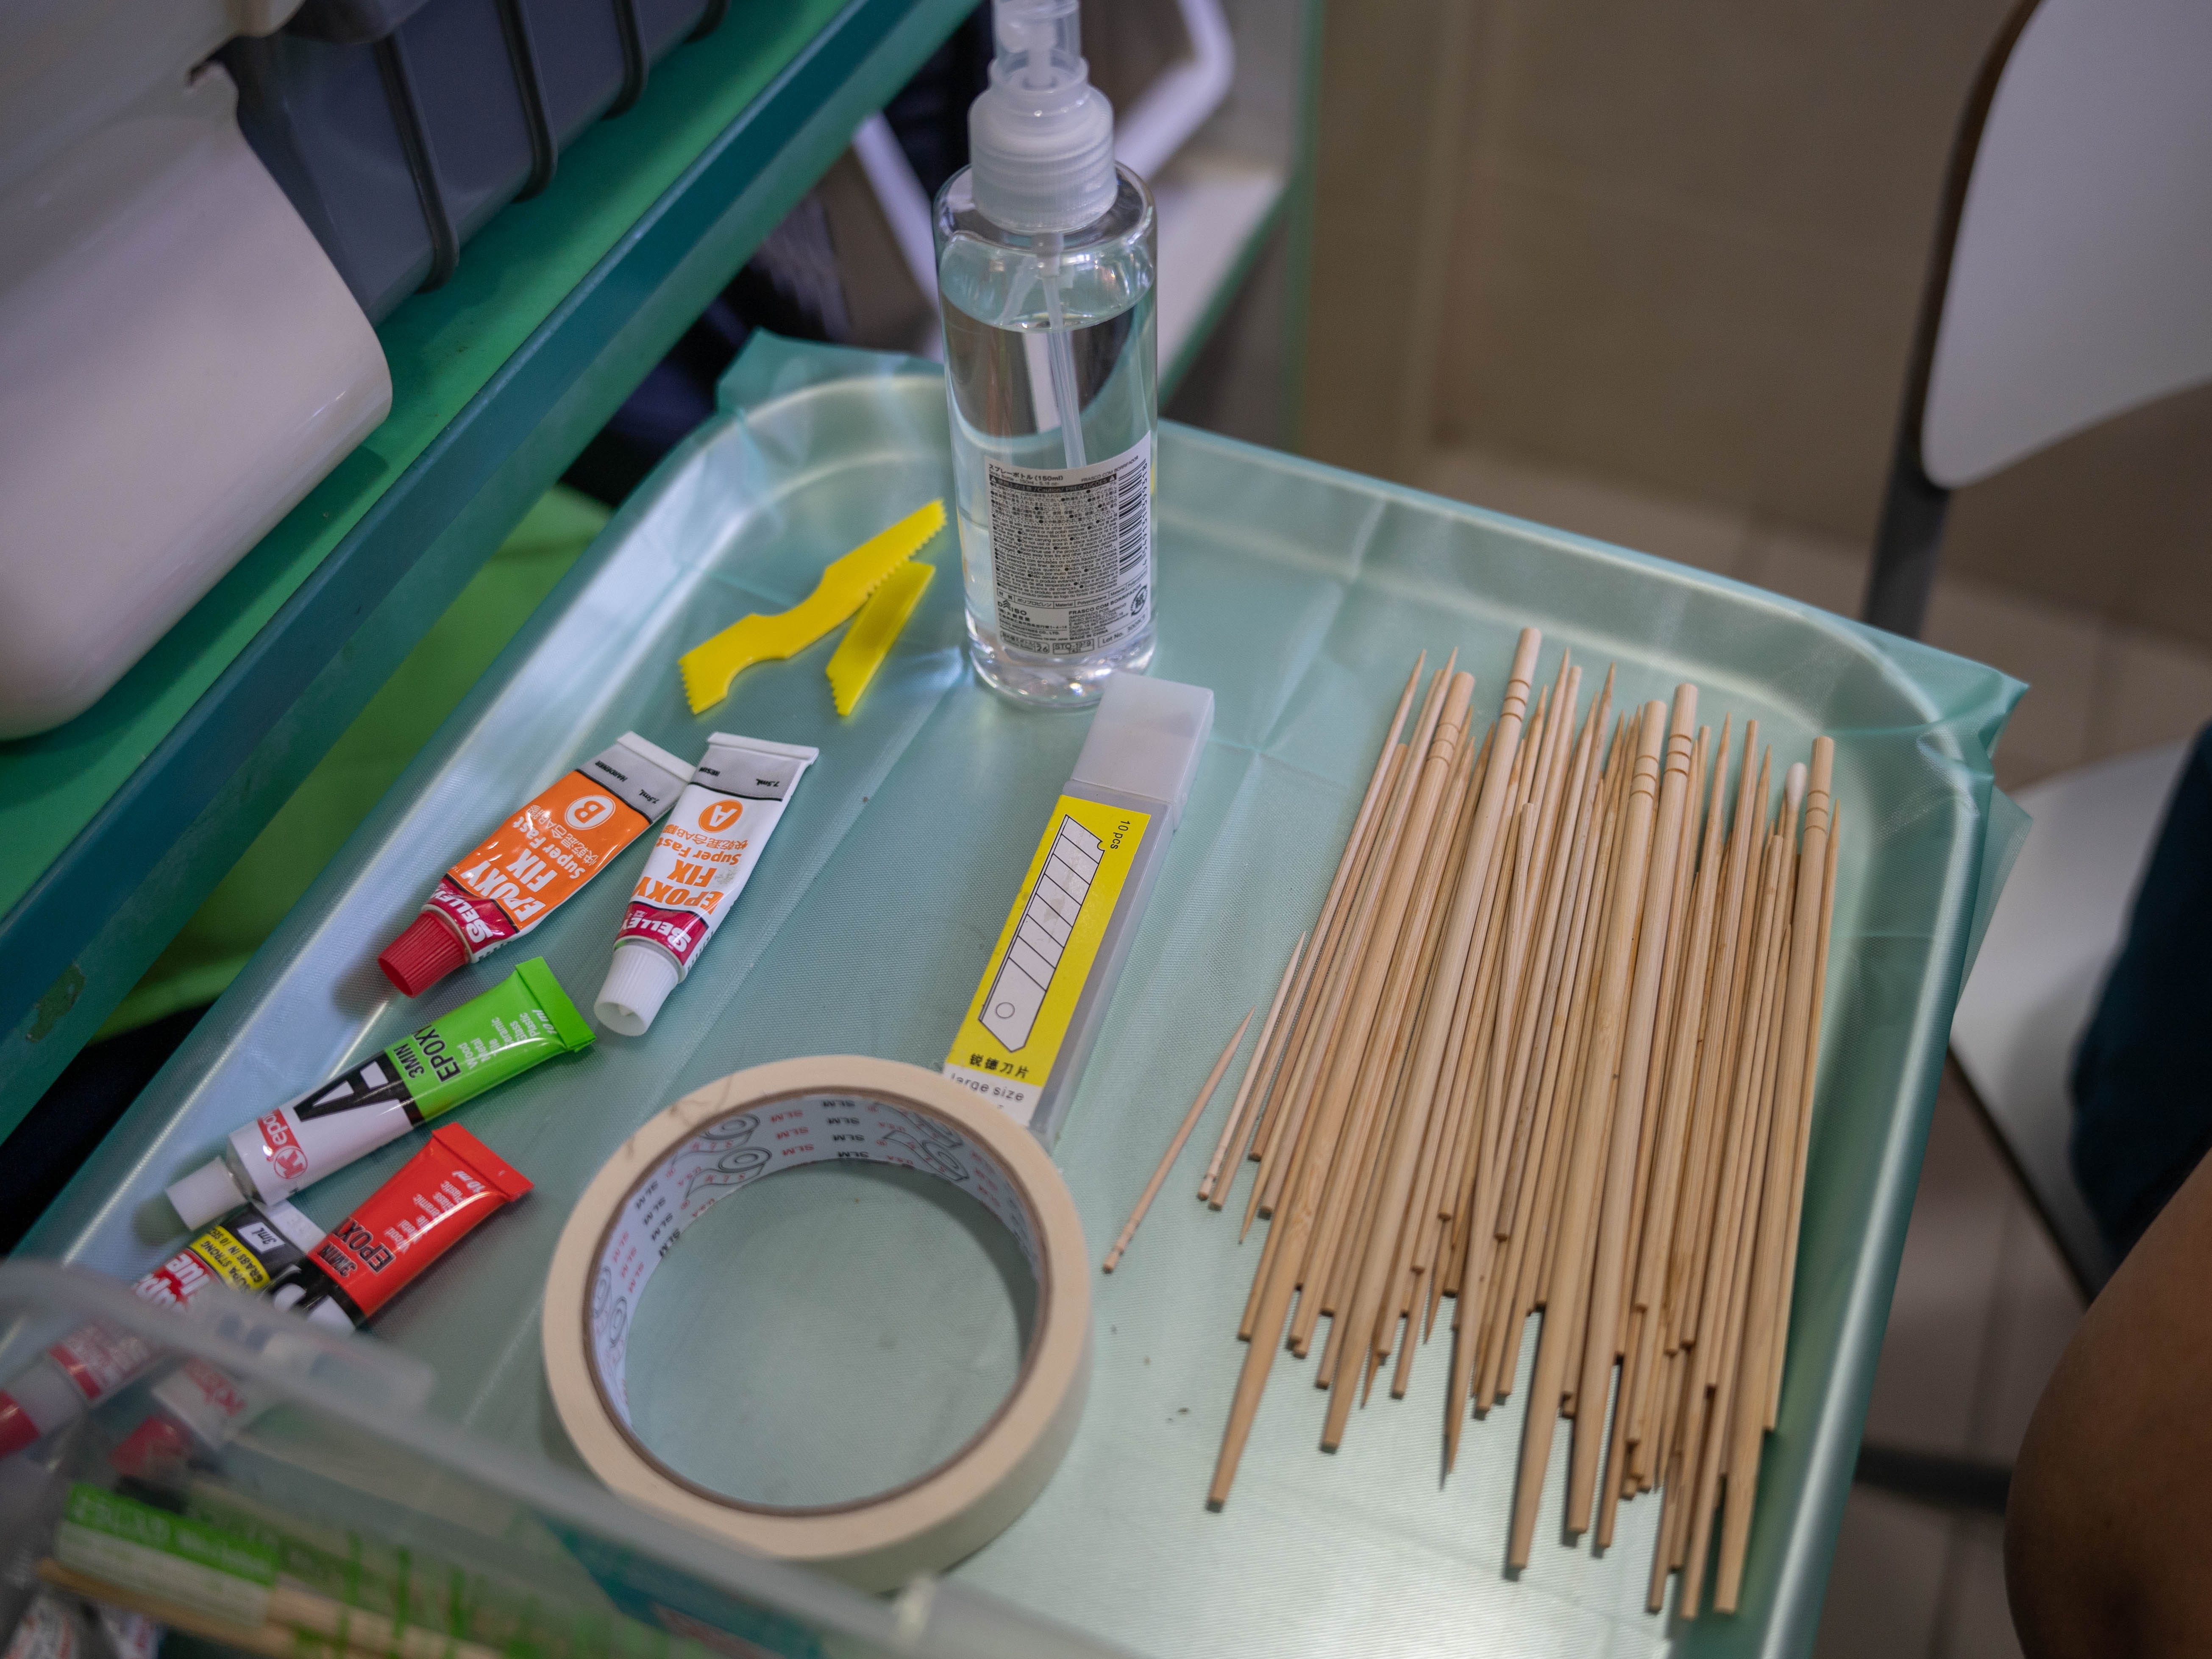 Essstäbchen aus Bambus und Epoxidröhrchen, die auf einem Tablett zur Vorbereitung des Imping-Verfahrens zu sehen sind